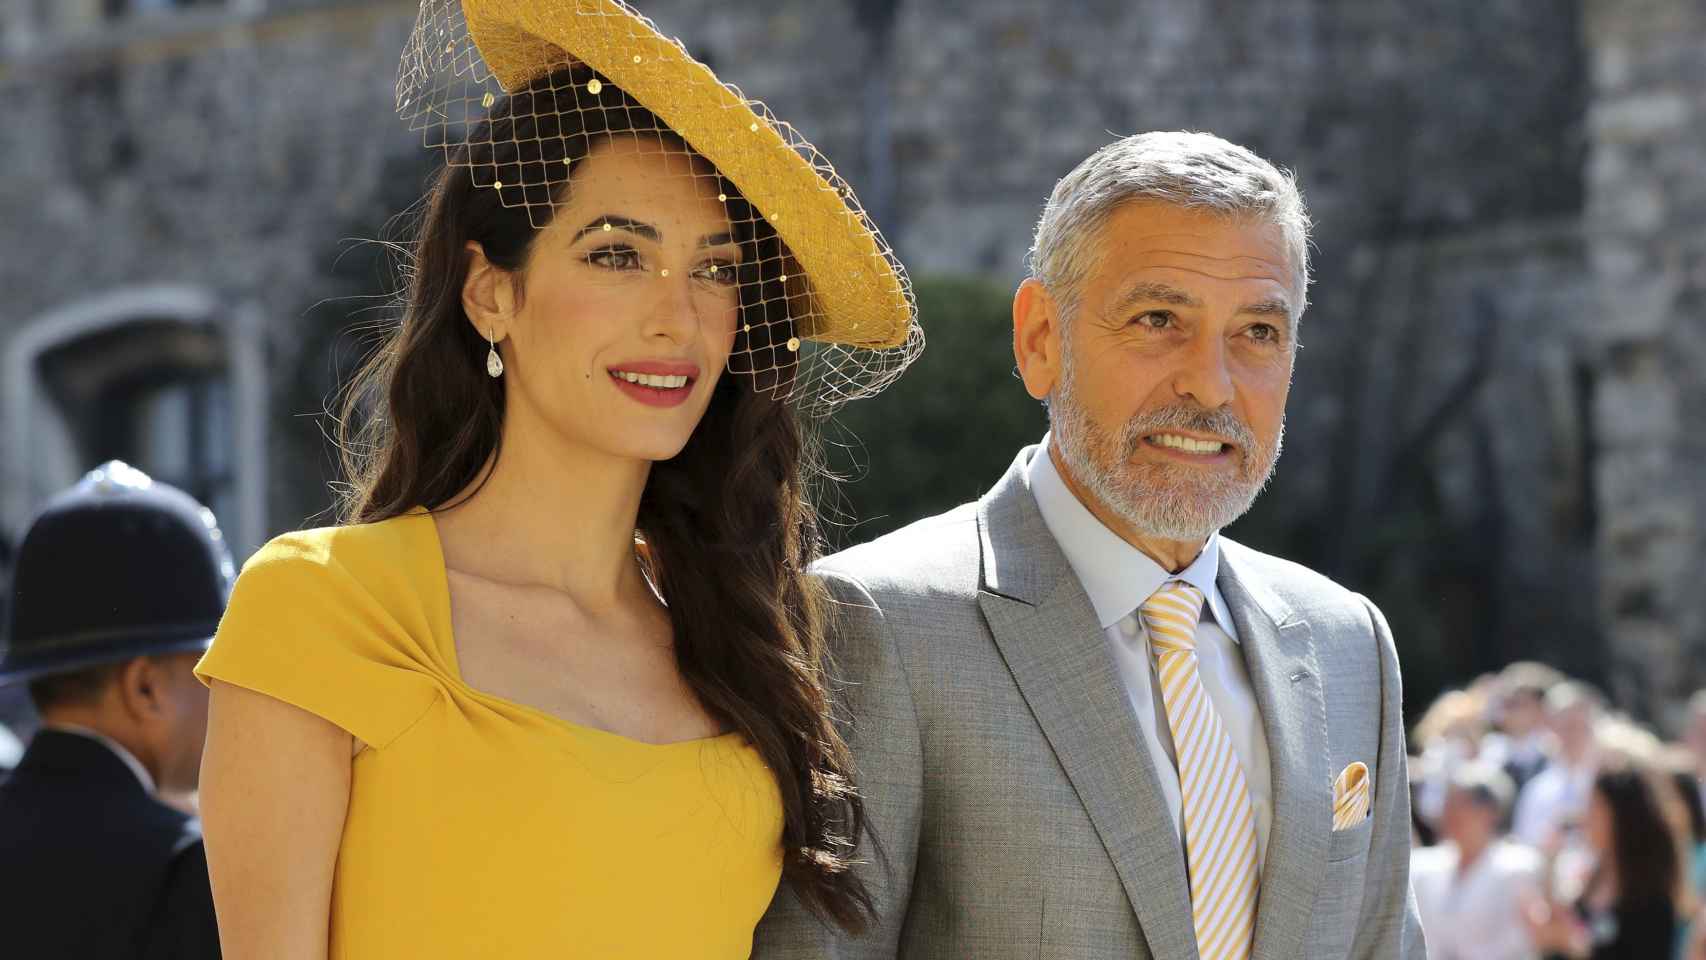 El matrimonio Clooney ha decidido jugar con el amarillo e ir conjuntados a la boda real.